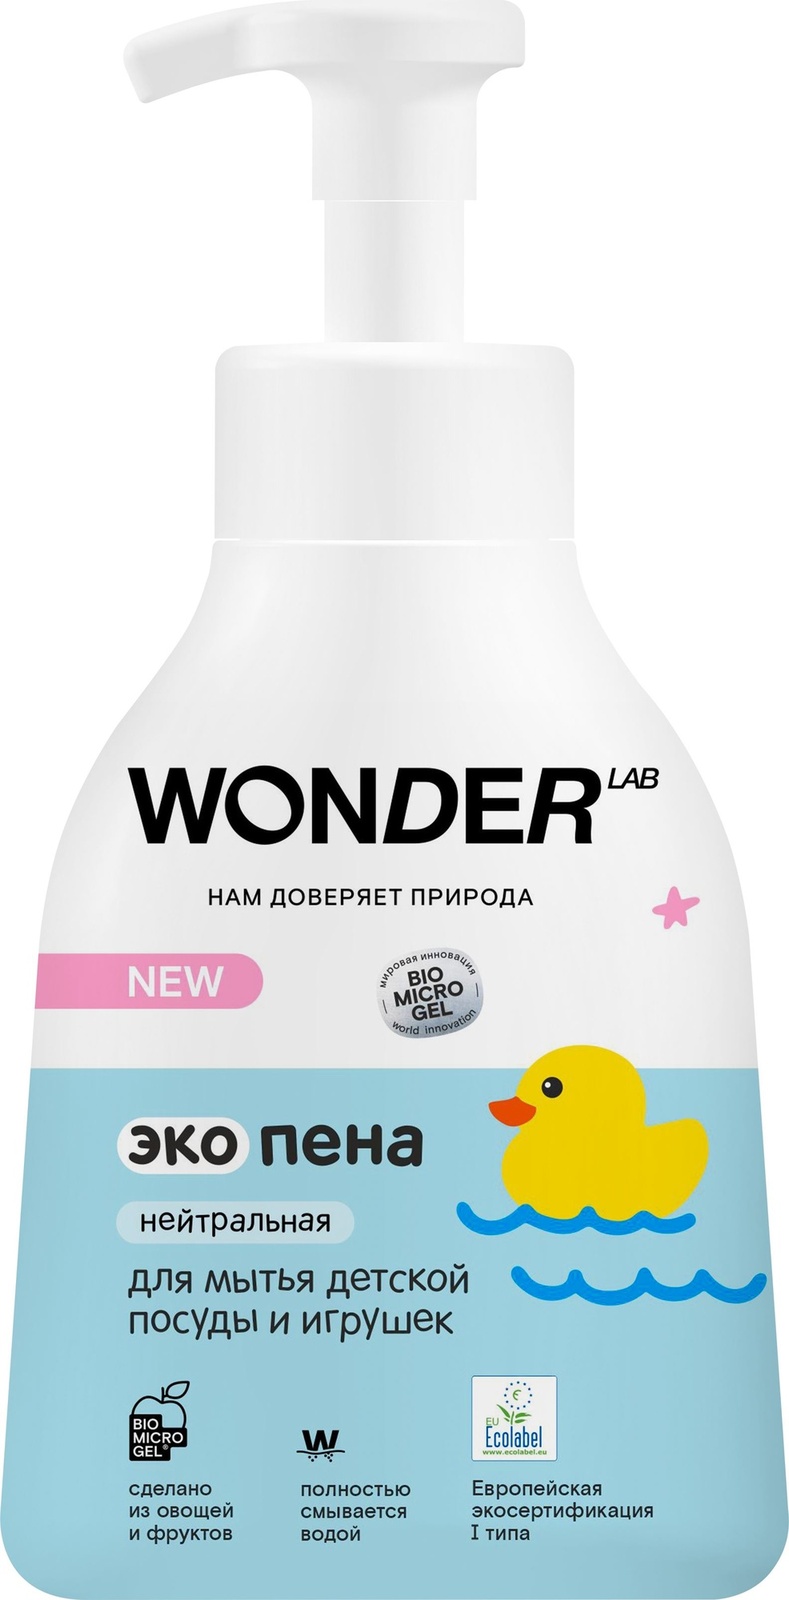 Wonder lab Wonder lab экопена для мытья детской посуды и игрушек (нейтральная) (450 мл)